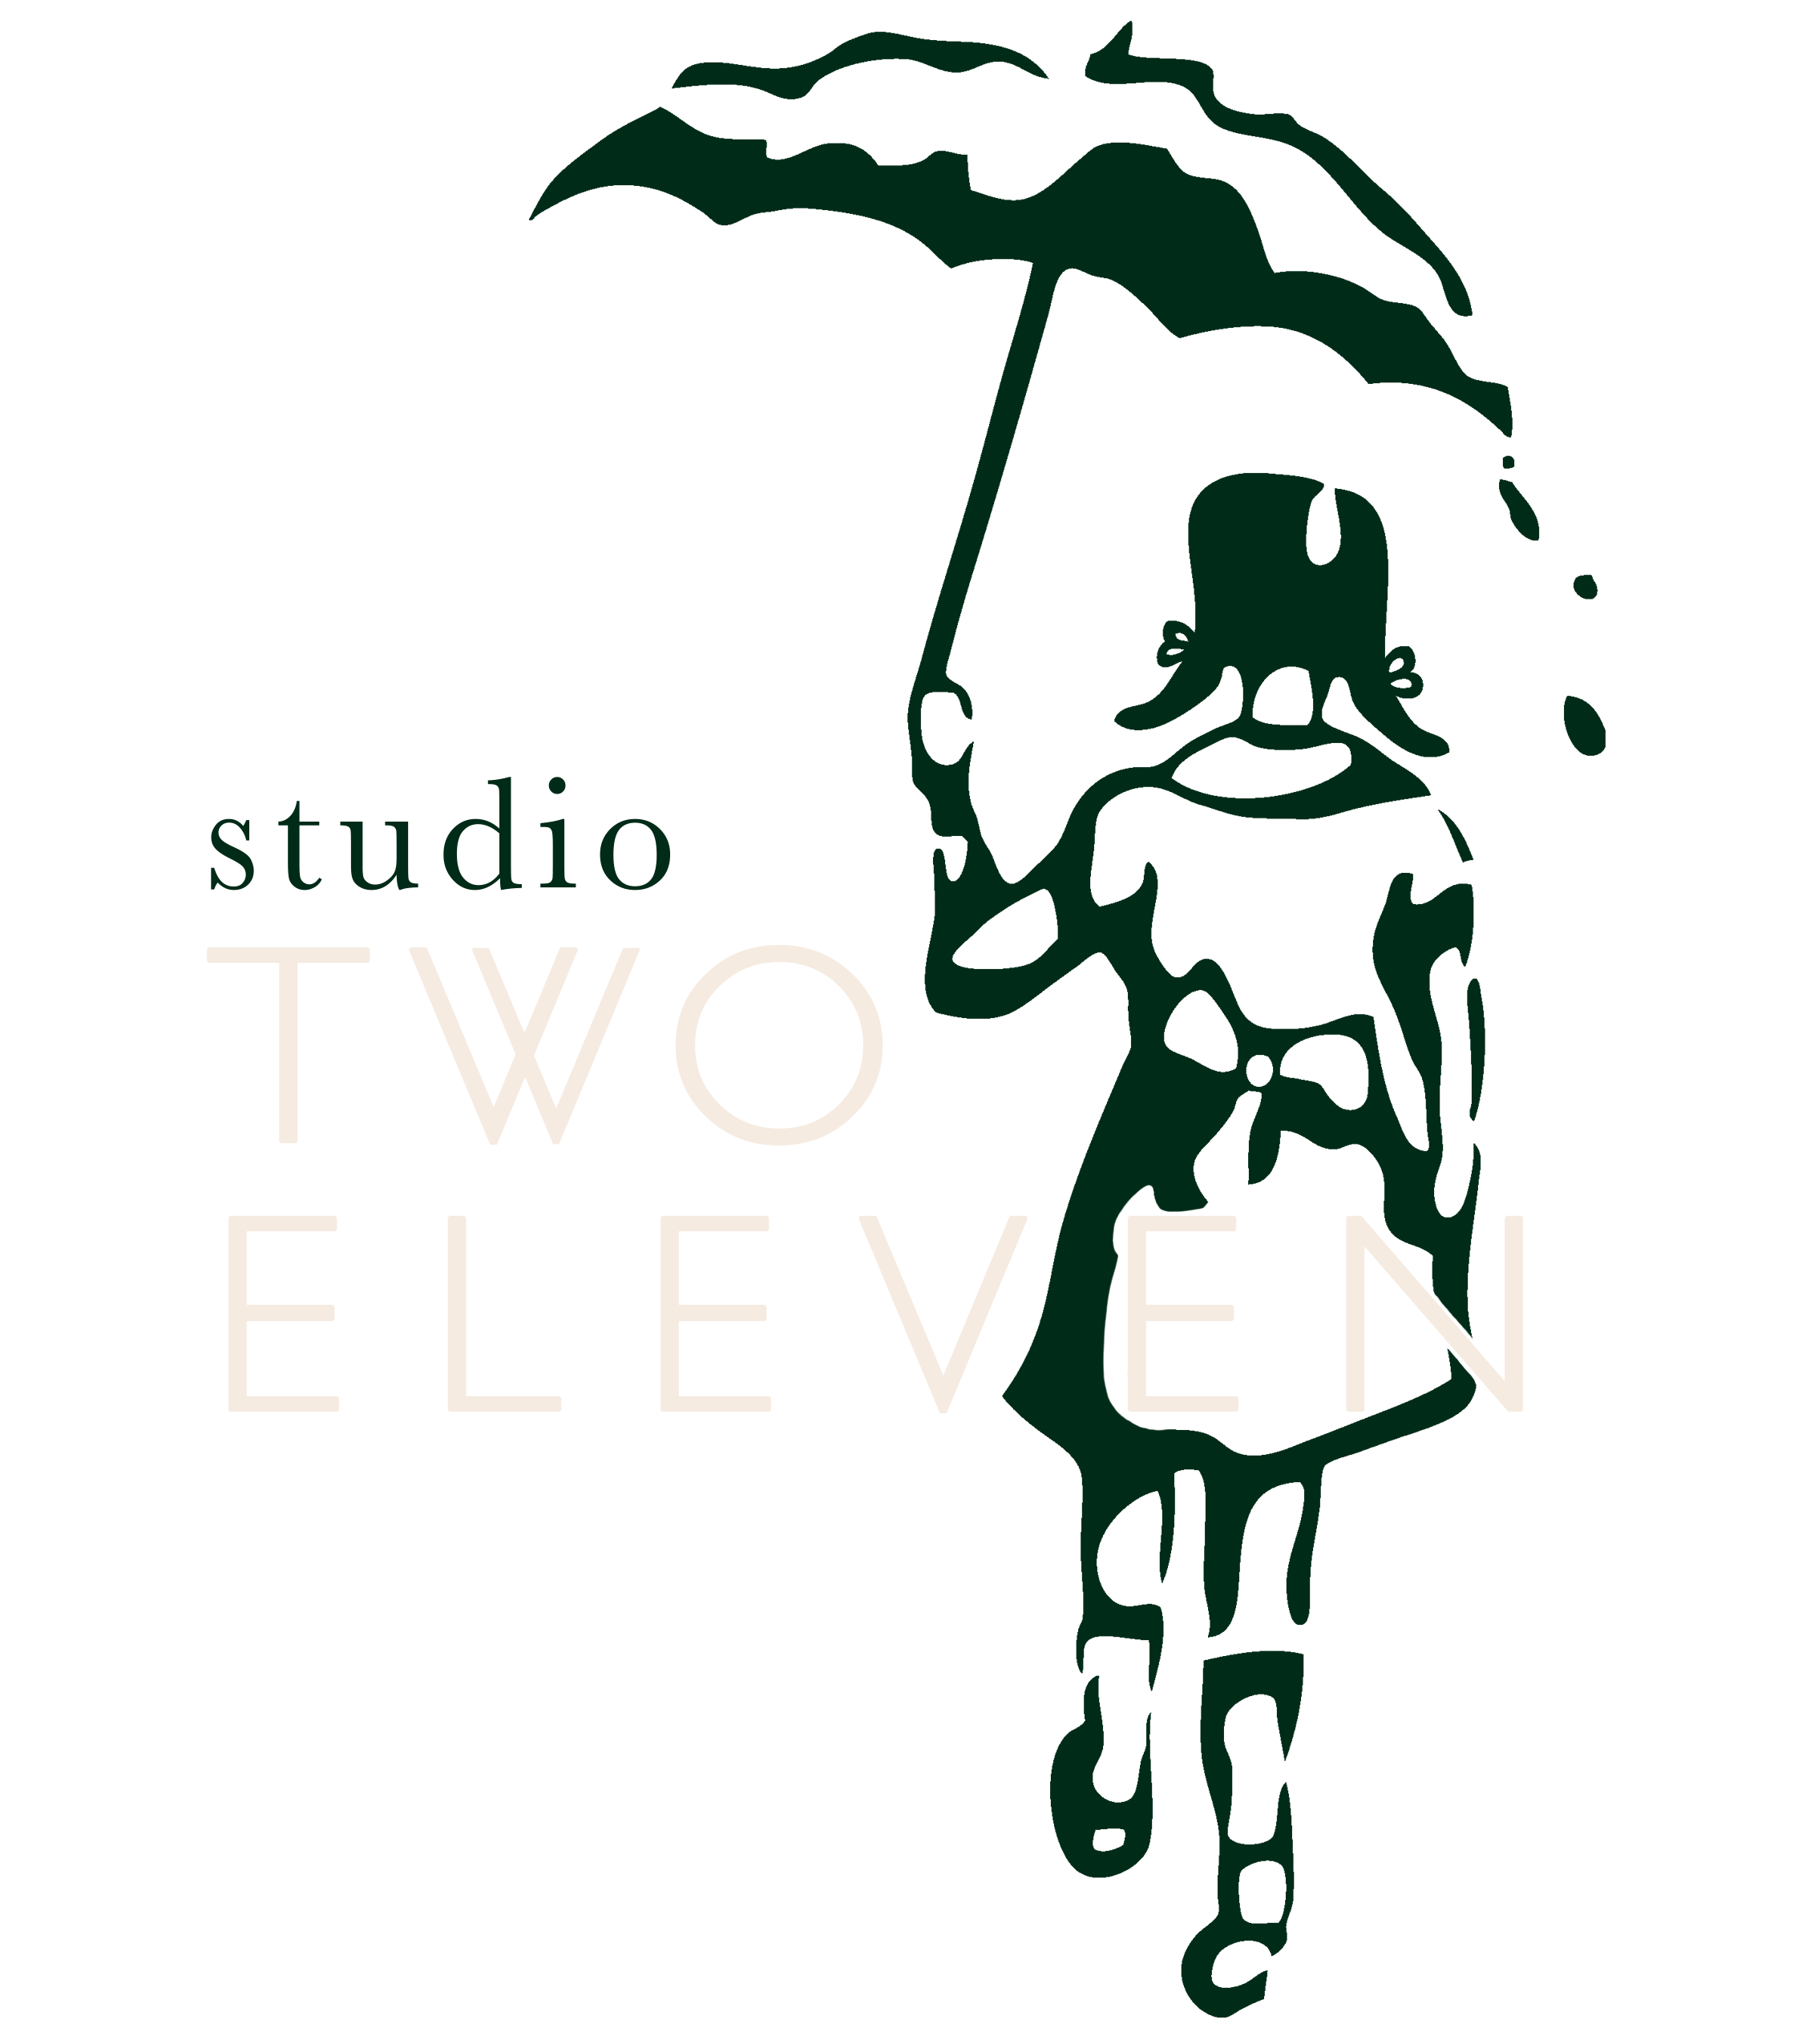 Studio Two Eleven